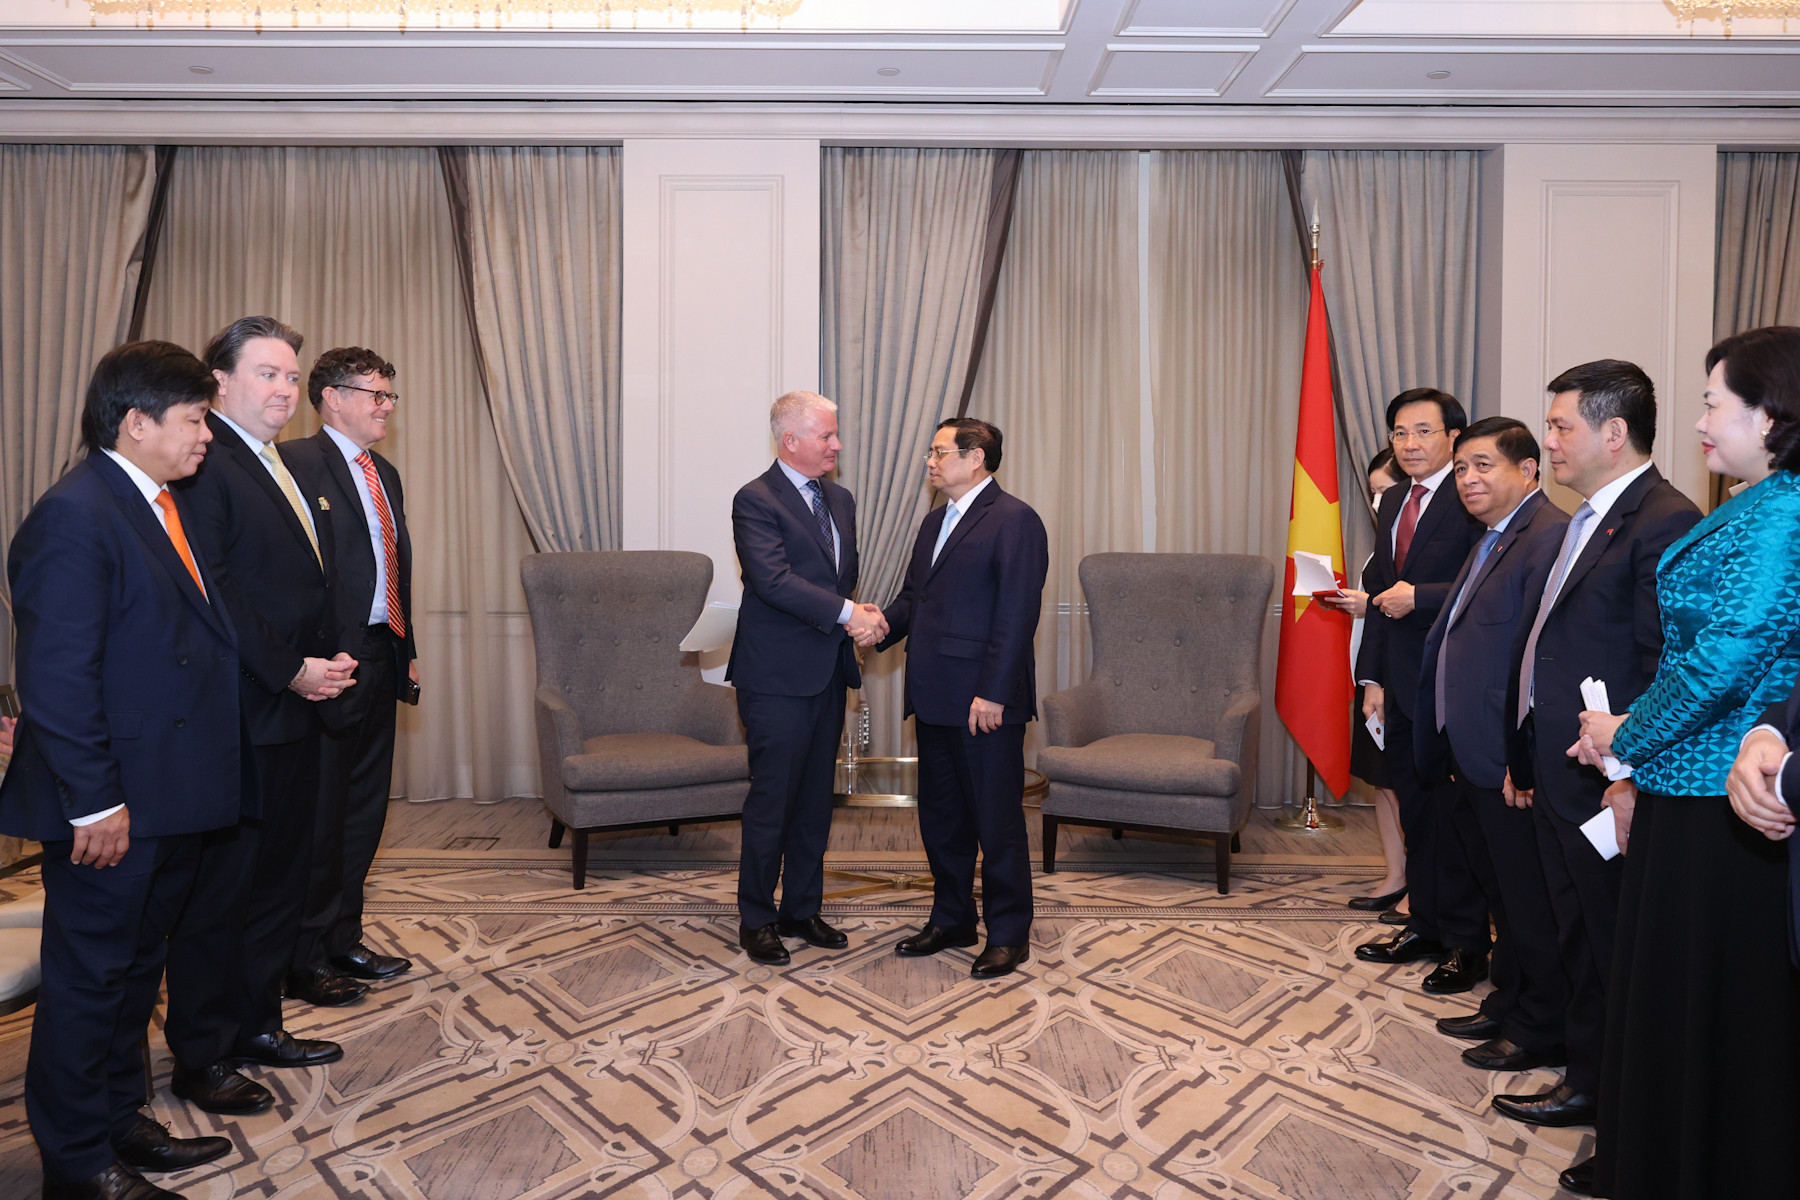 Thủ tướng thúc đẩy quỹ lớn hàng đầu thế giới đầu tư nhiều hơn tại Việt Nam - Ảnh 1.